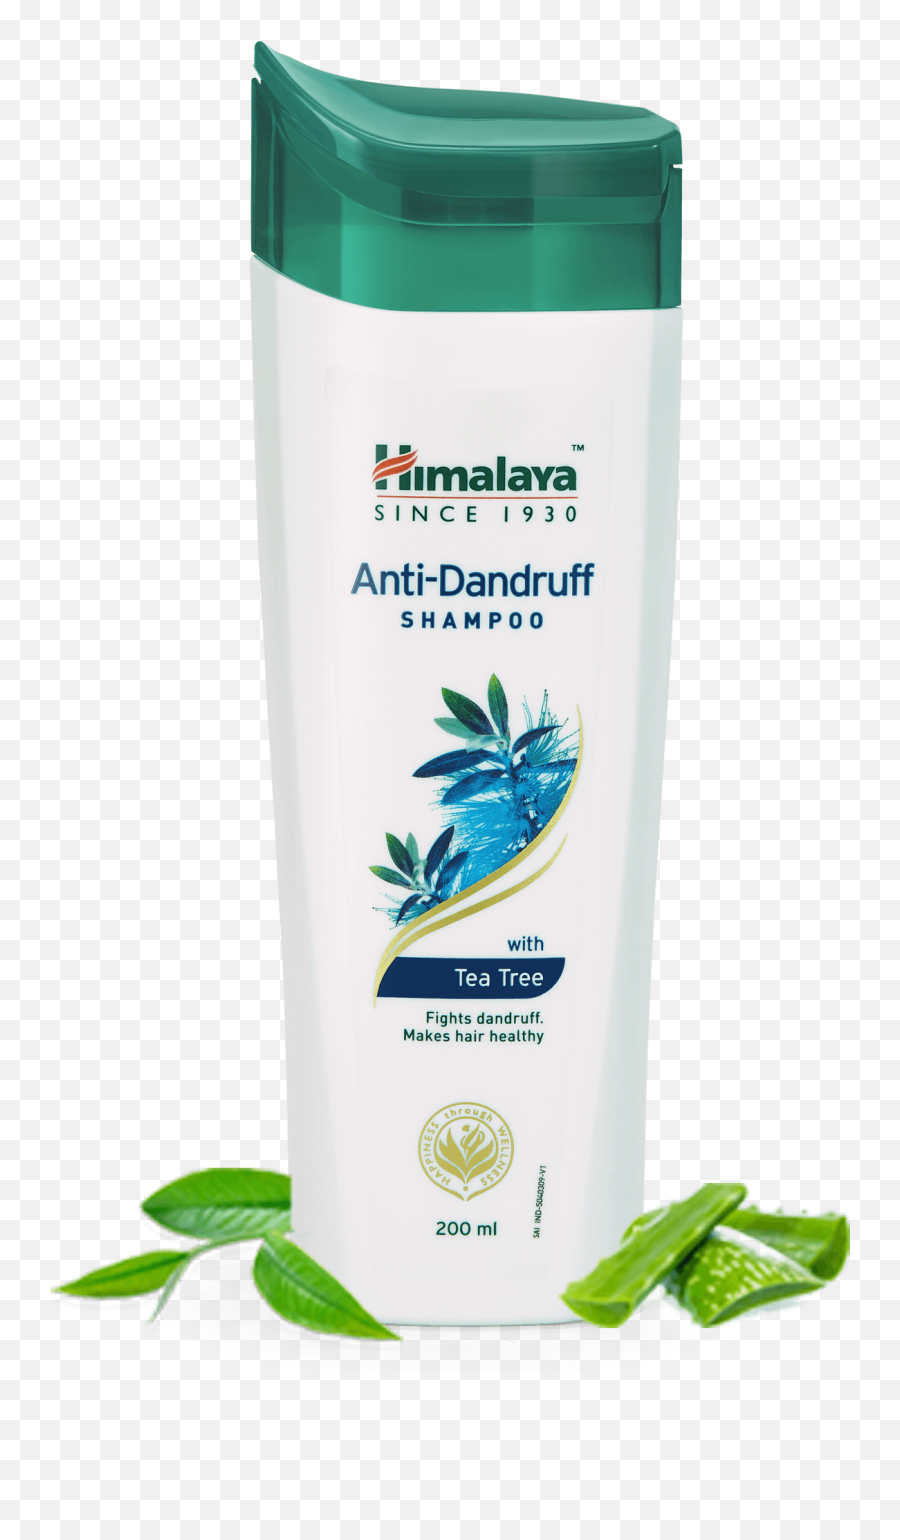 Himalaya Anti - Dandruff Shampoo Fights Dandruff Makes Hair Himalaya Anti Dandruff Shampoo Png,Shampoo Png